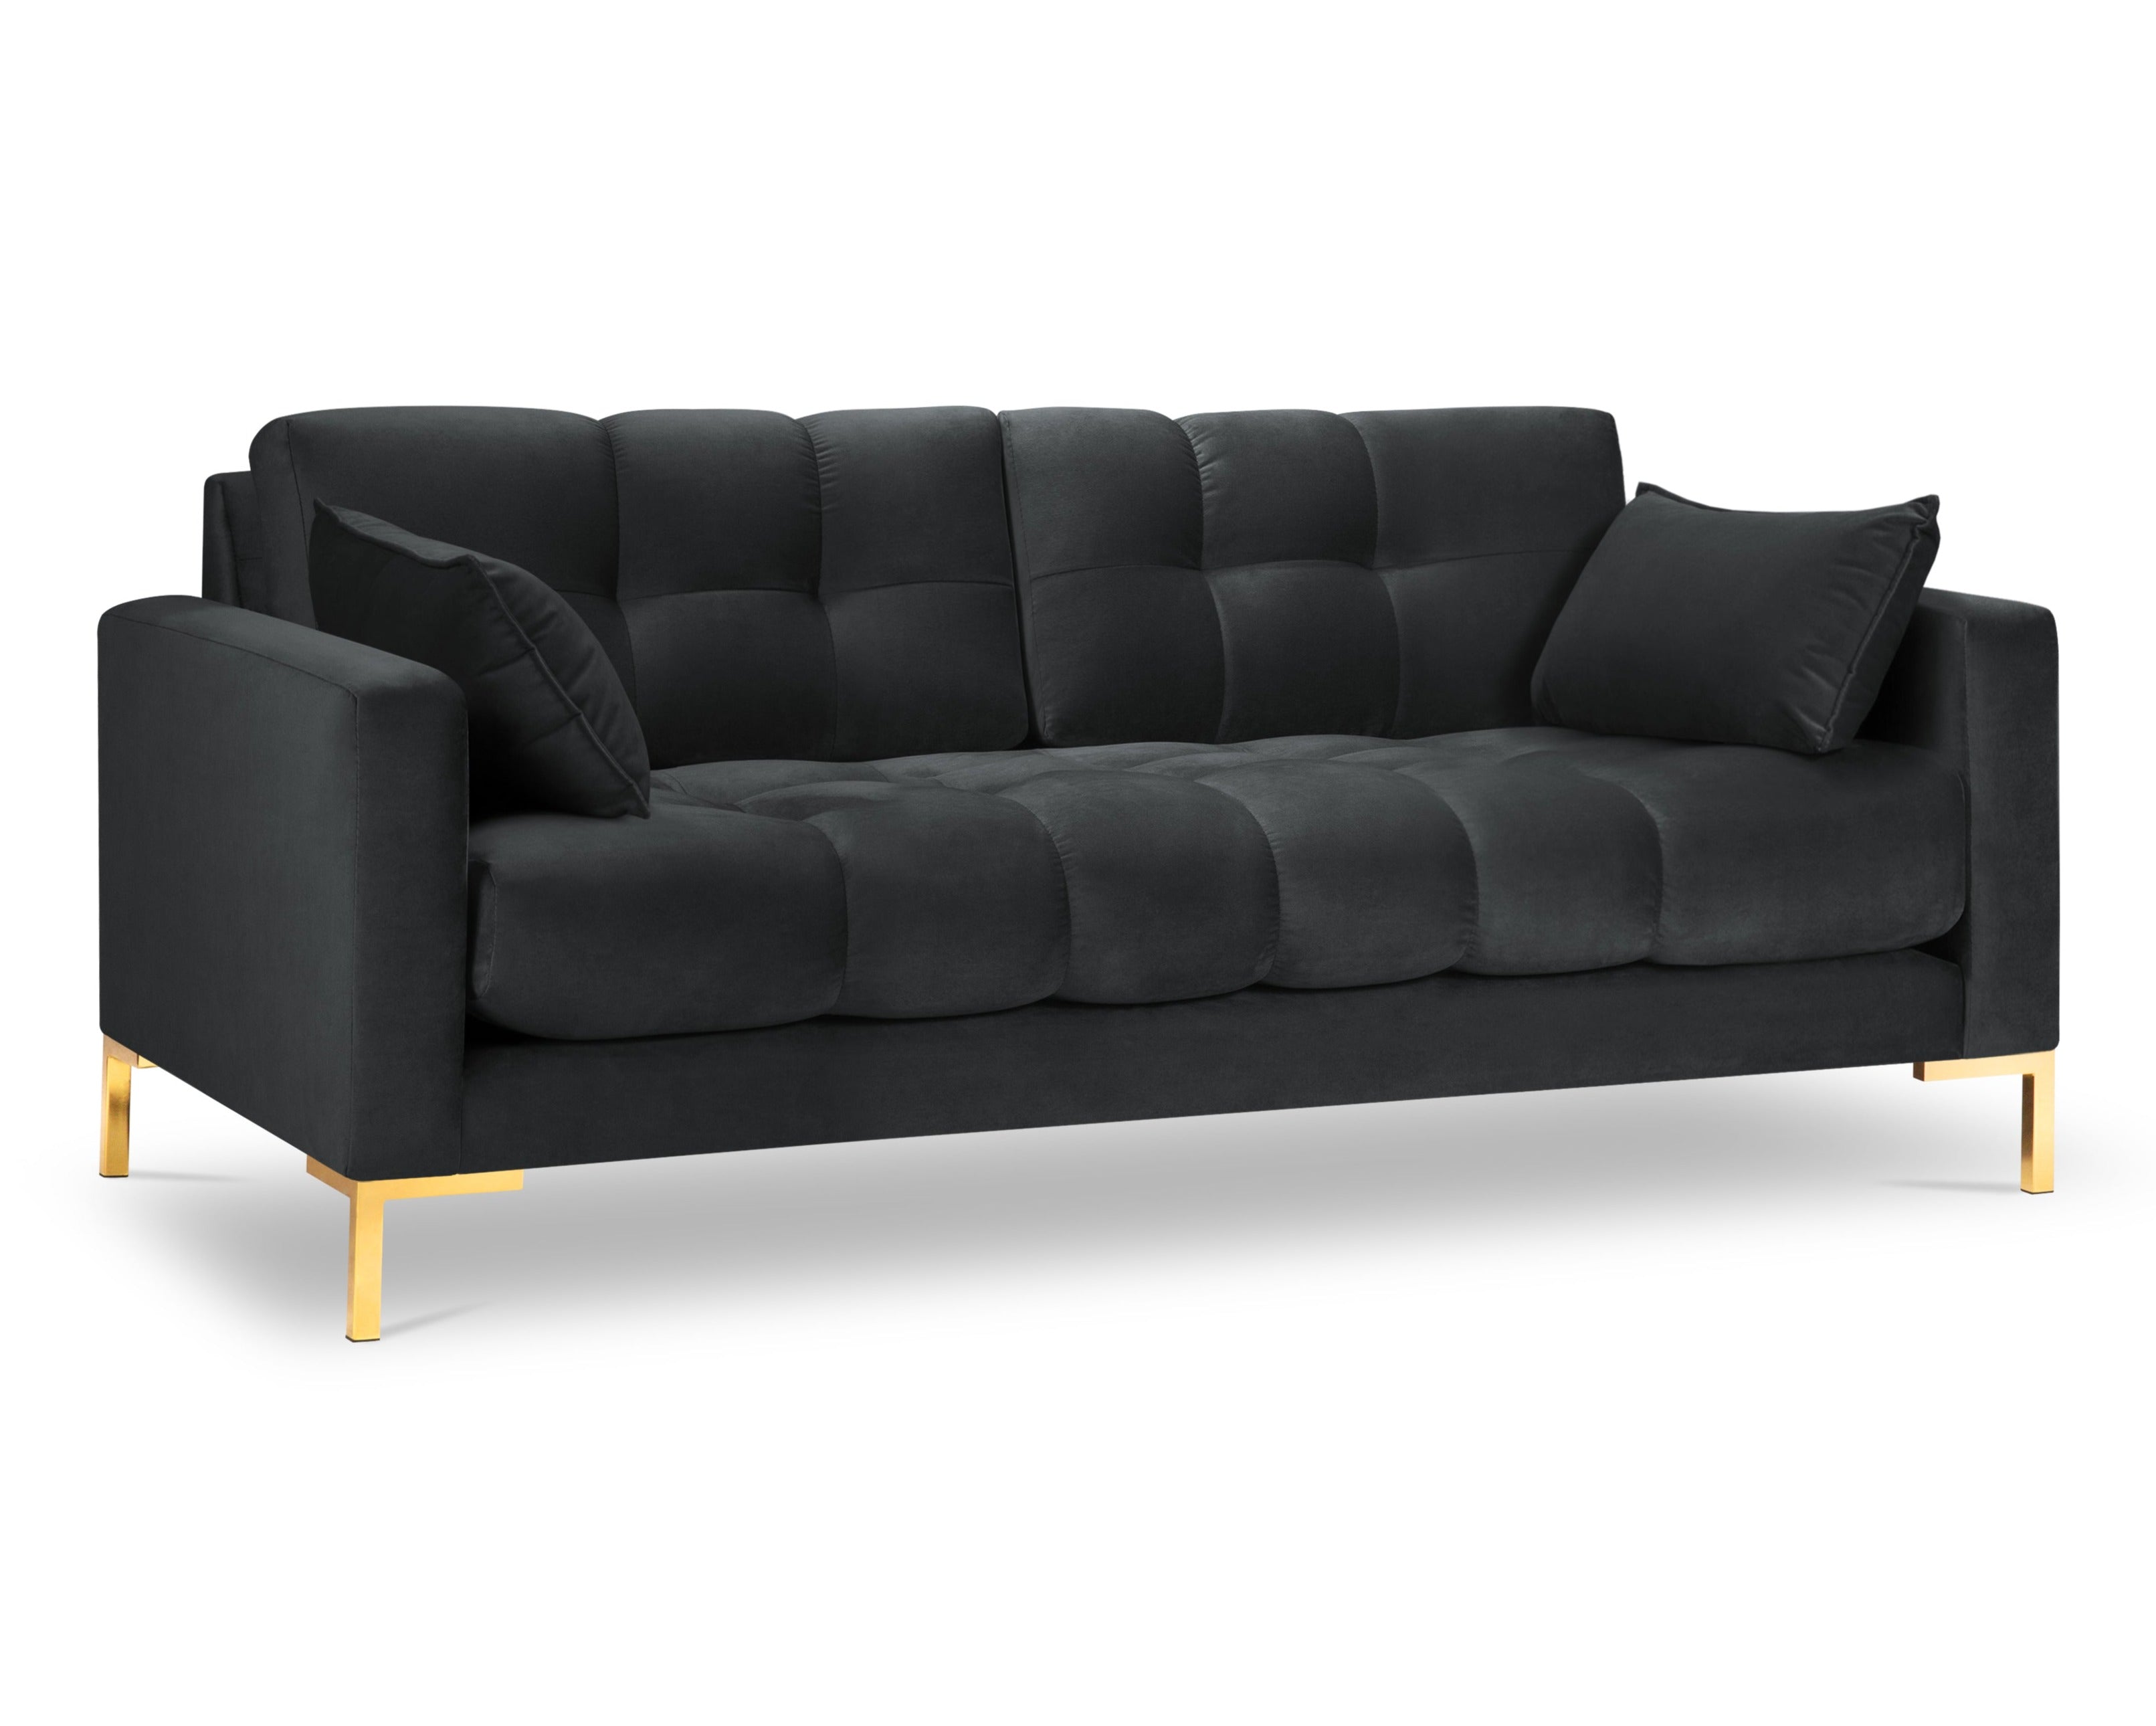 3-person dark gray sofa